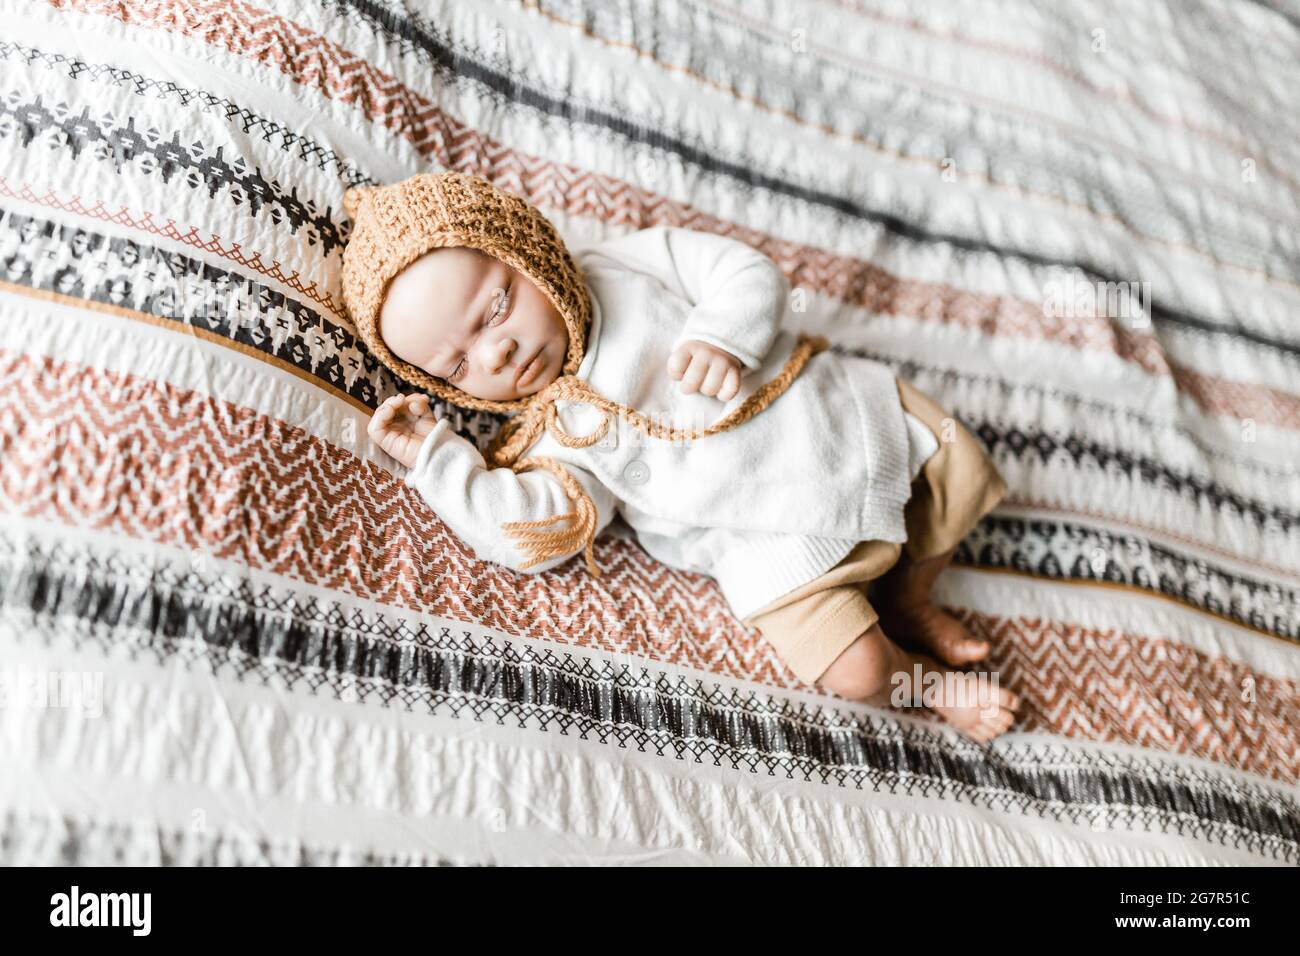 Wiedergeborene Babypuppe, die auf einem Bett mit gemustertem Dovetbezug und einer Haube liegt, Model Release ist nicht erforderlich, da Baby eine lebensechte Puppe ist Stockfoto